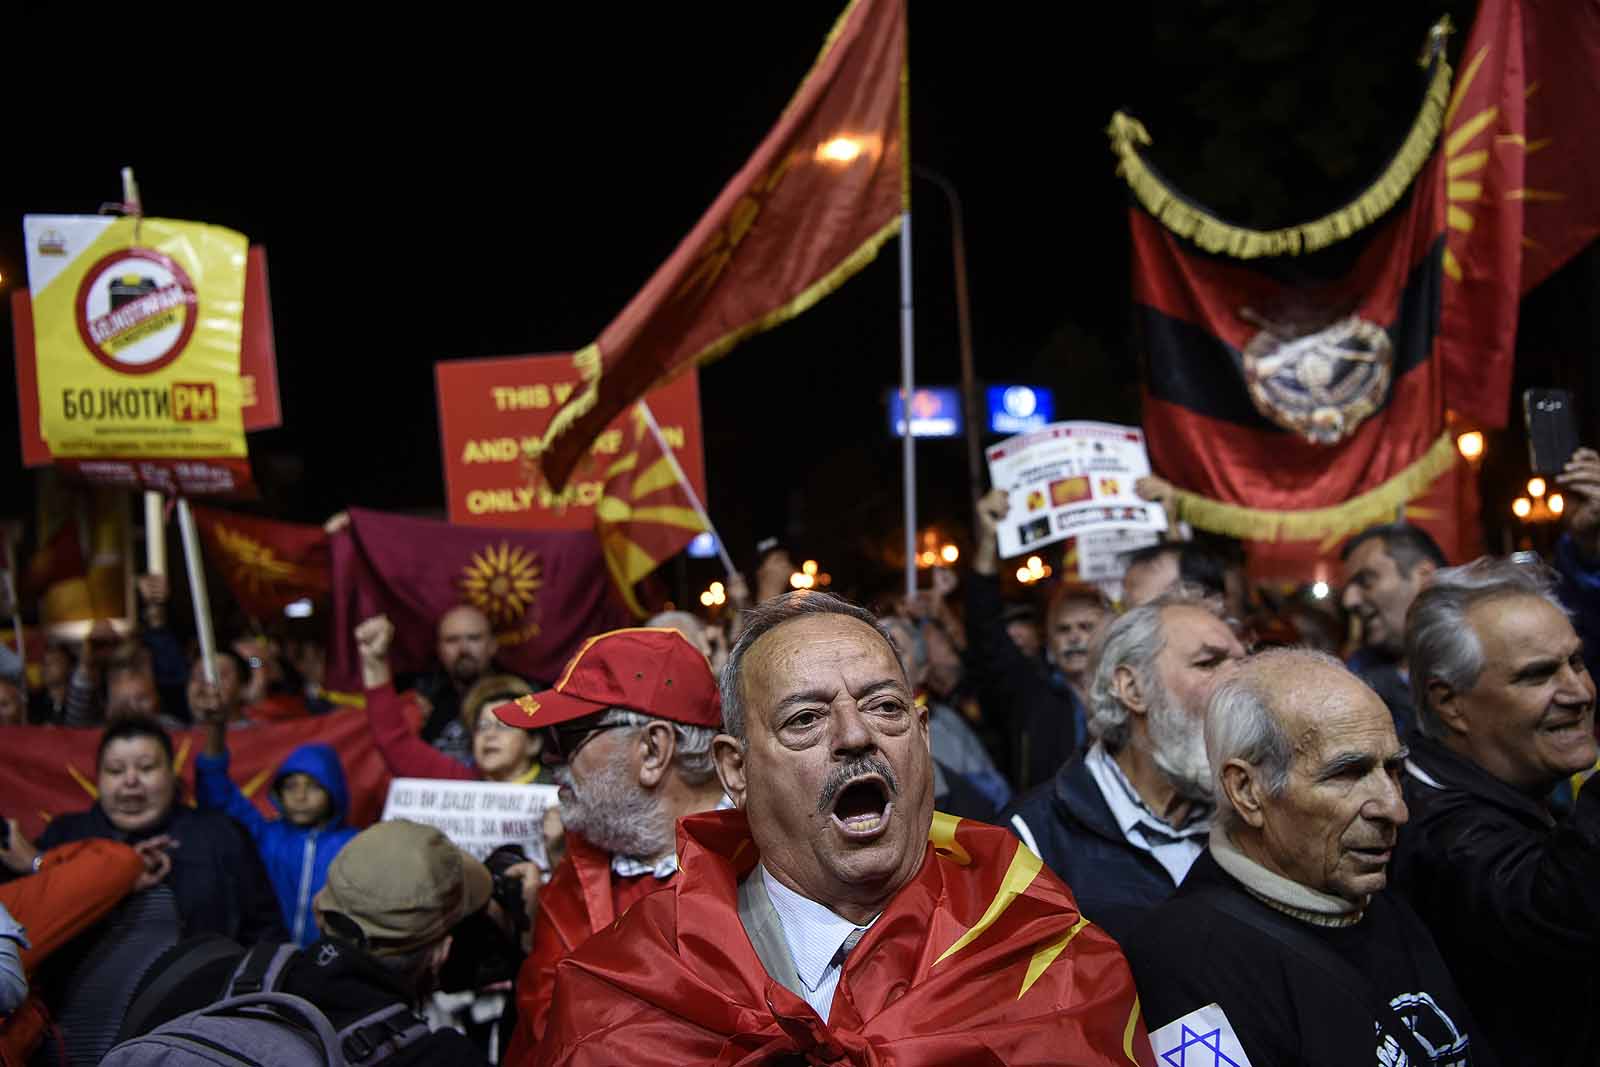 Sikerült semmit sem eldönteni a mindent eldöntő macedóniai népszavazáson